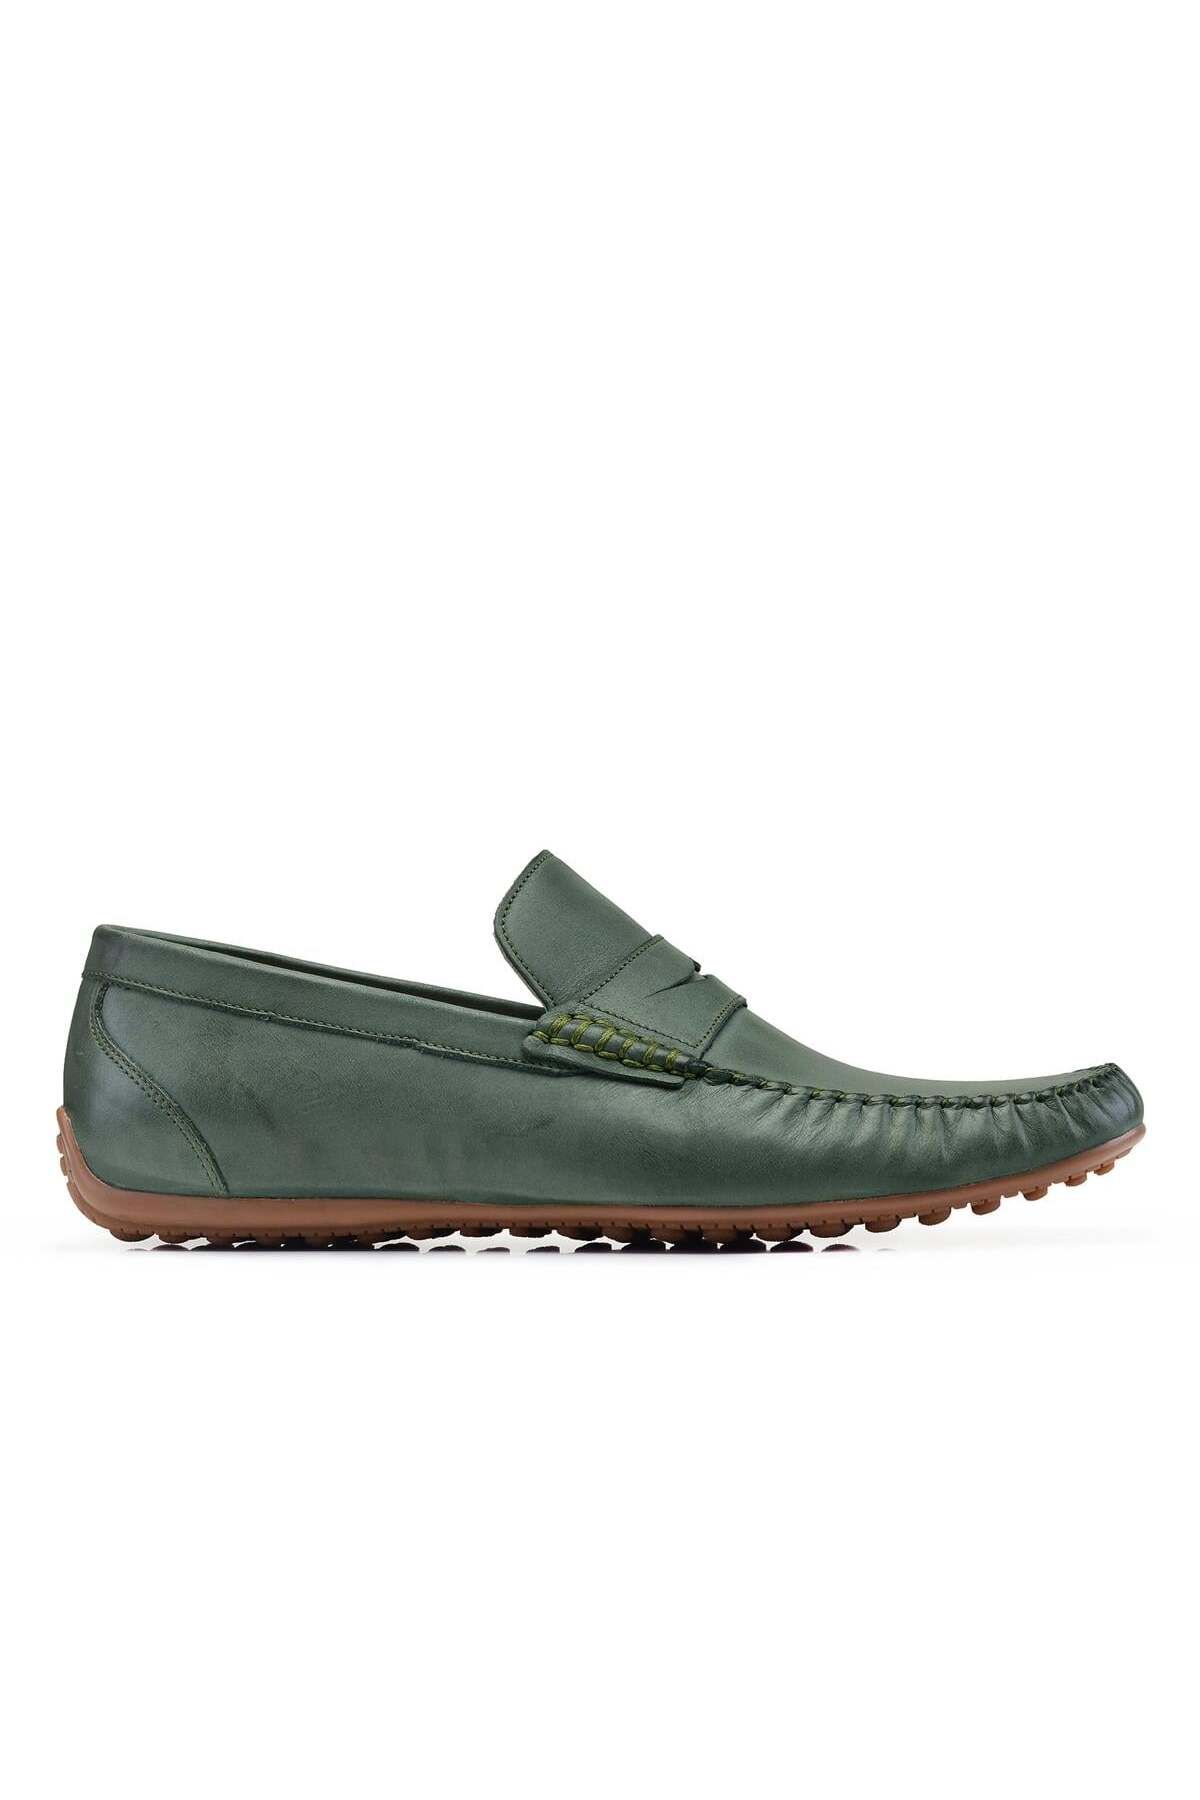 Nevzat Onay Nubuk Yeşil Yazlık Loafer Erkek Ayakkabı -22925-